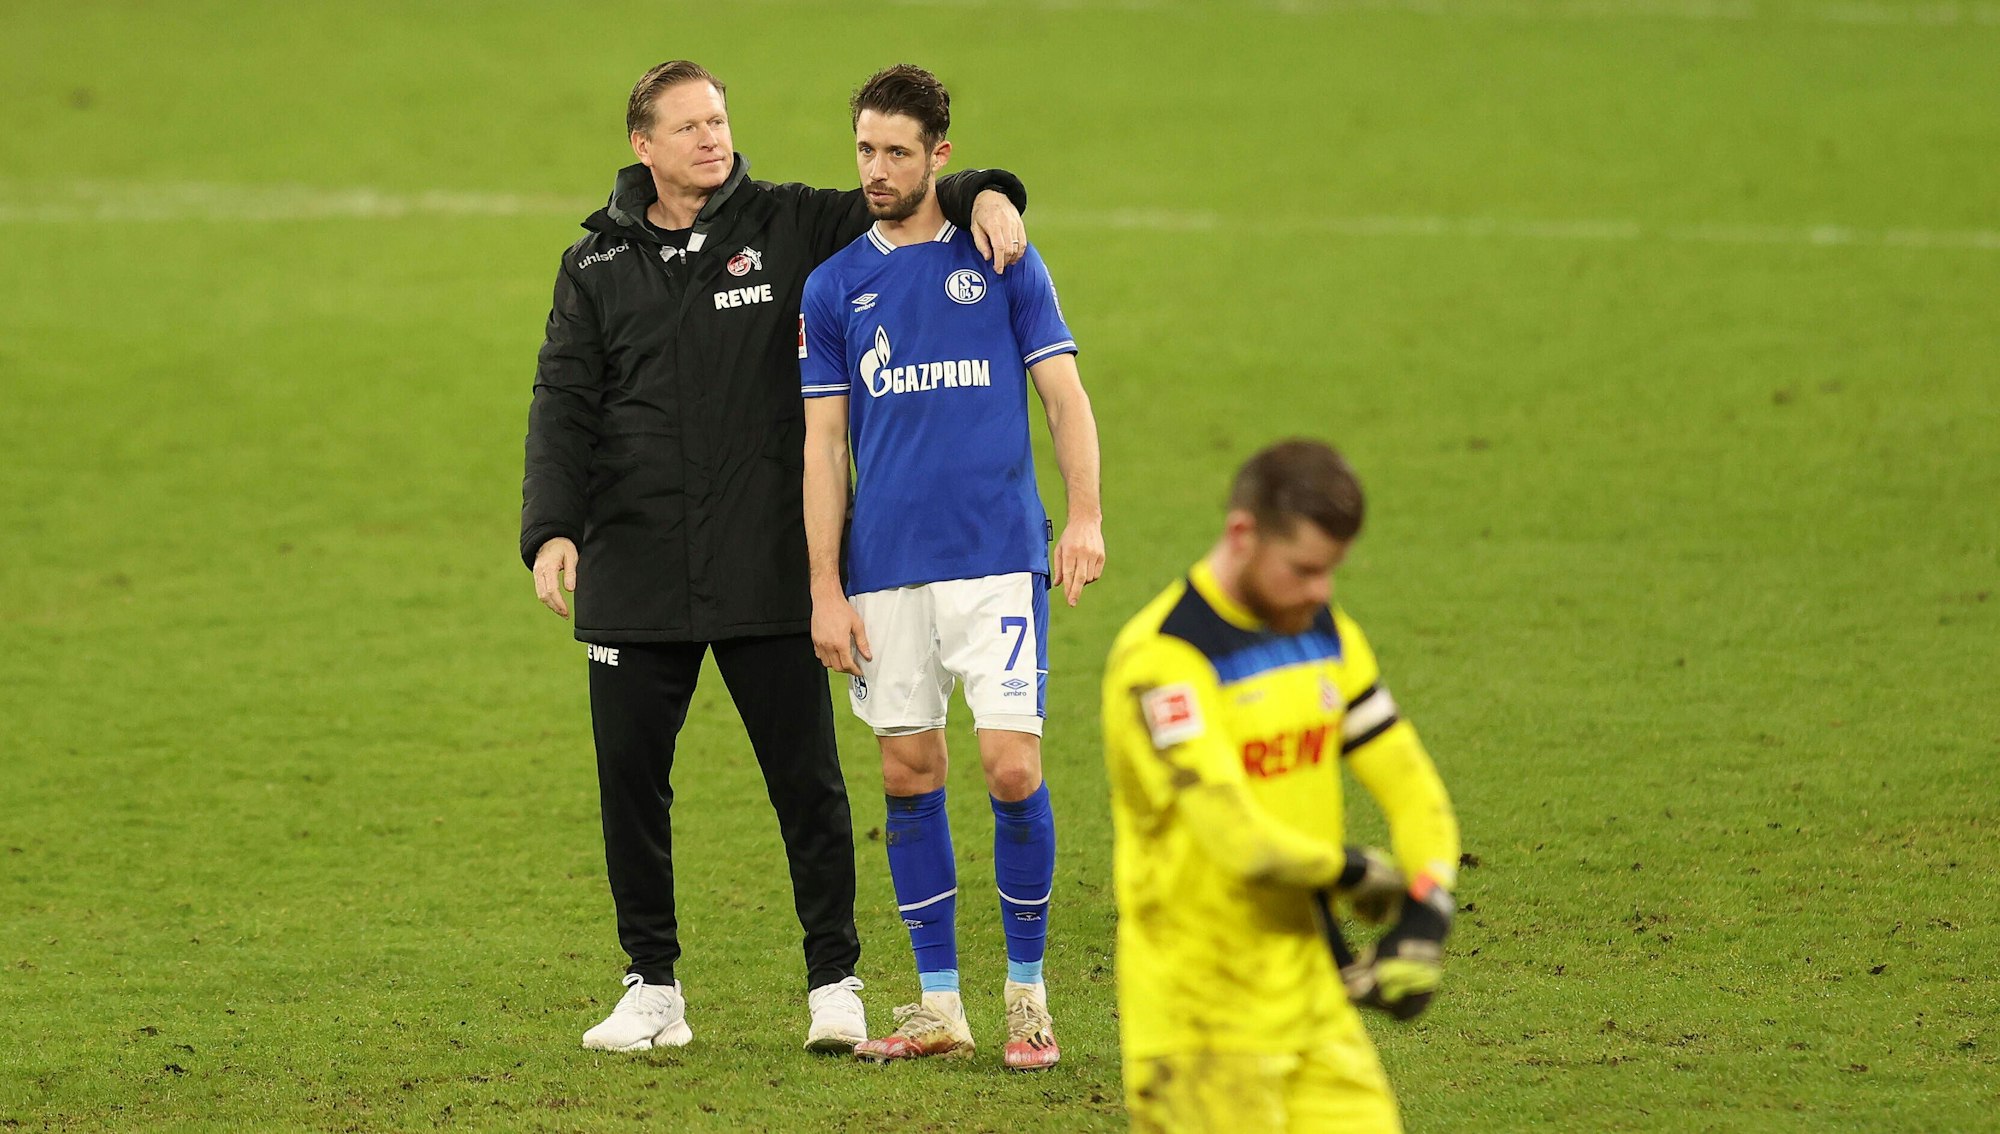 Der Kölner Trainer Markus Gisdol legt seinen Arm um Schalke-Spieler Mark Uth.